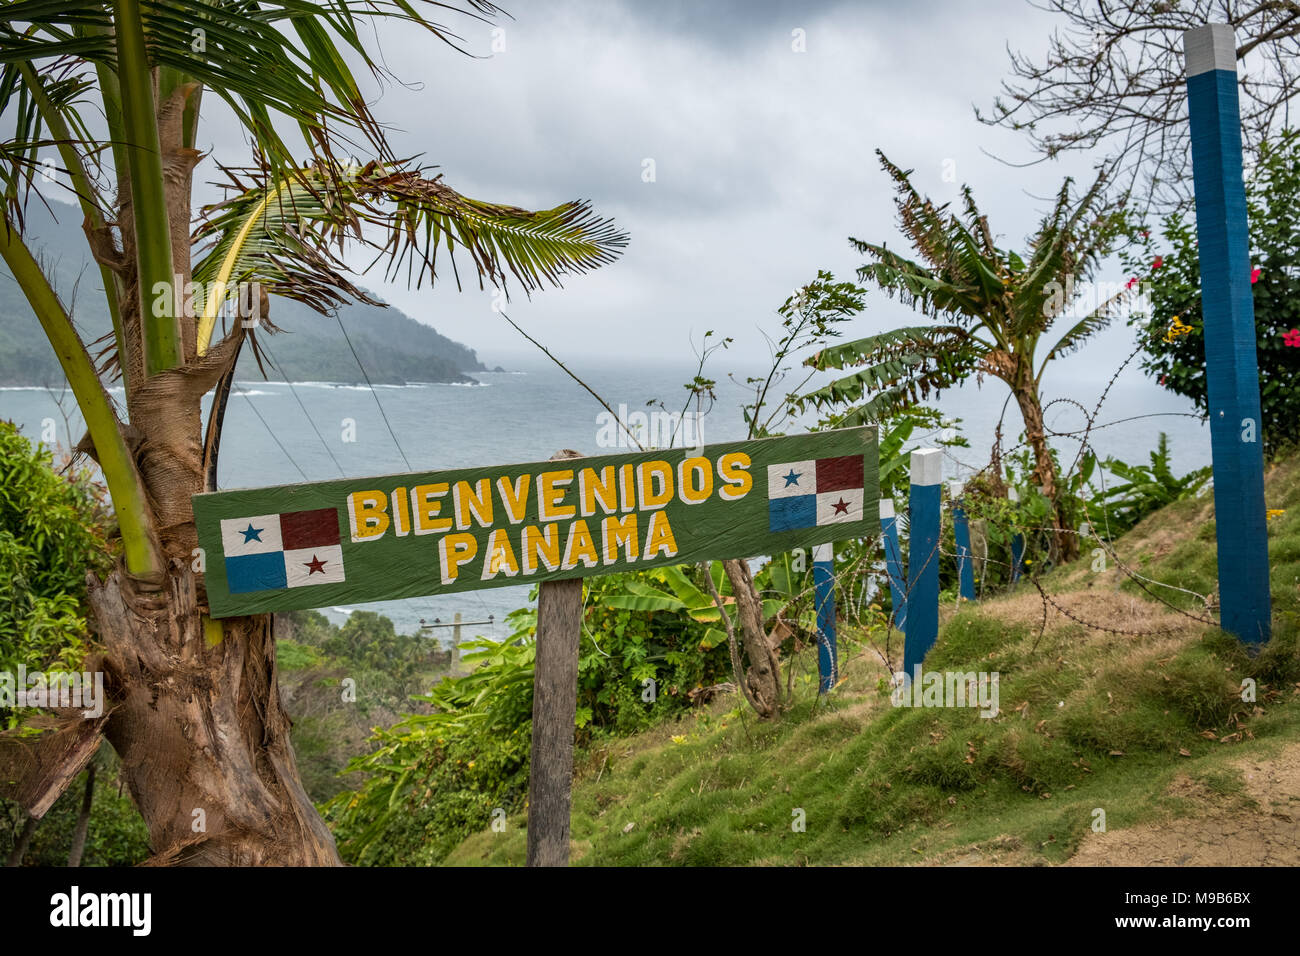 Grenze zwischen Panama und Kolumbien Willkommen - Bienvenidos Panama (panam) unterzeichnen - Stockfoto